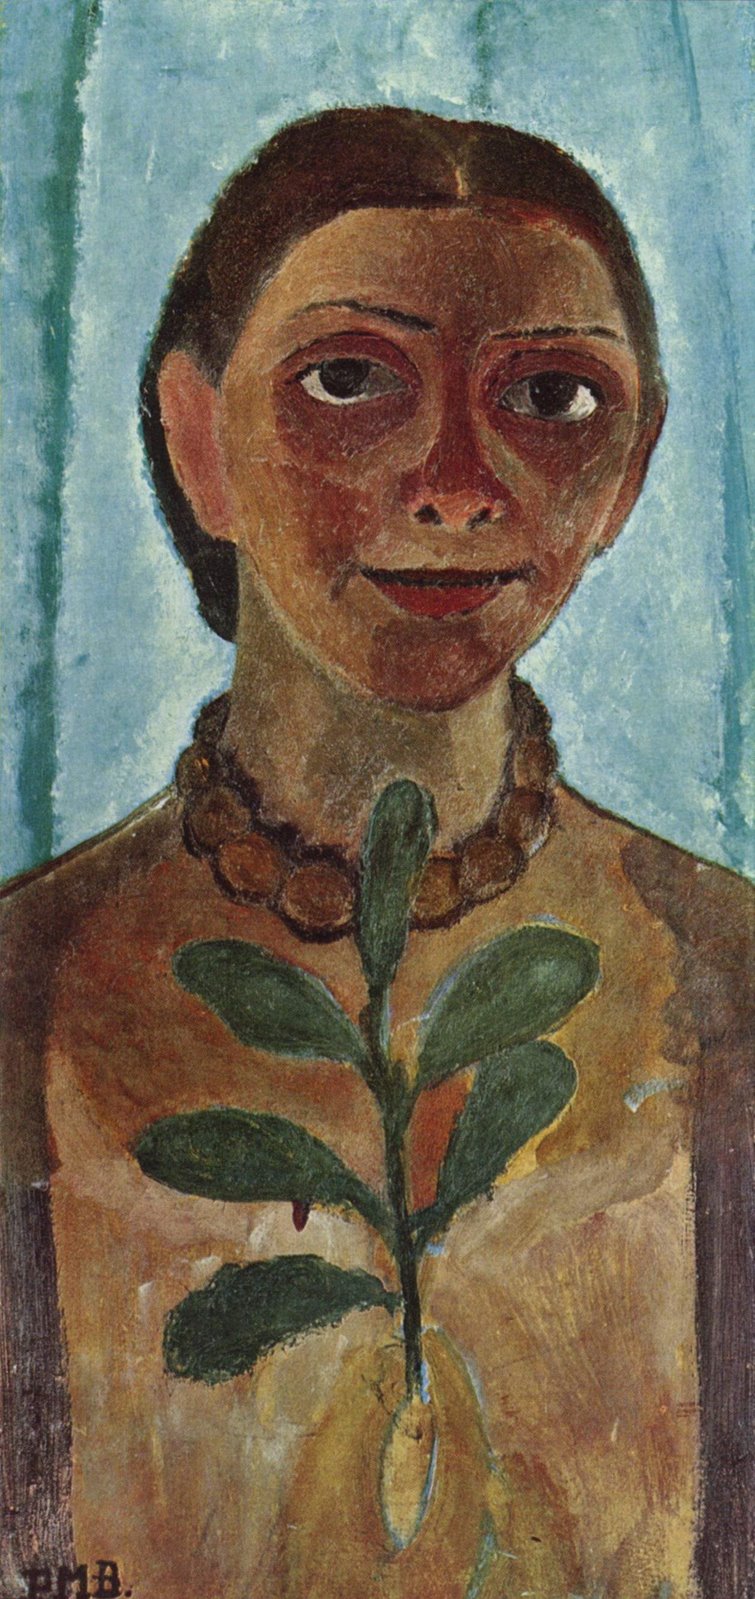 [Paula+Modersohn-Becker,+Självporträtt+med+kameliakvist,+1907,+olja+på+trä,+62+x+31+cm.jpg]